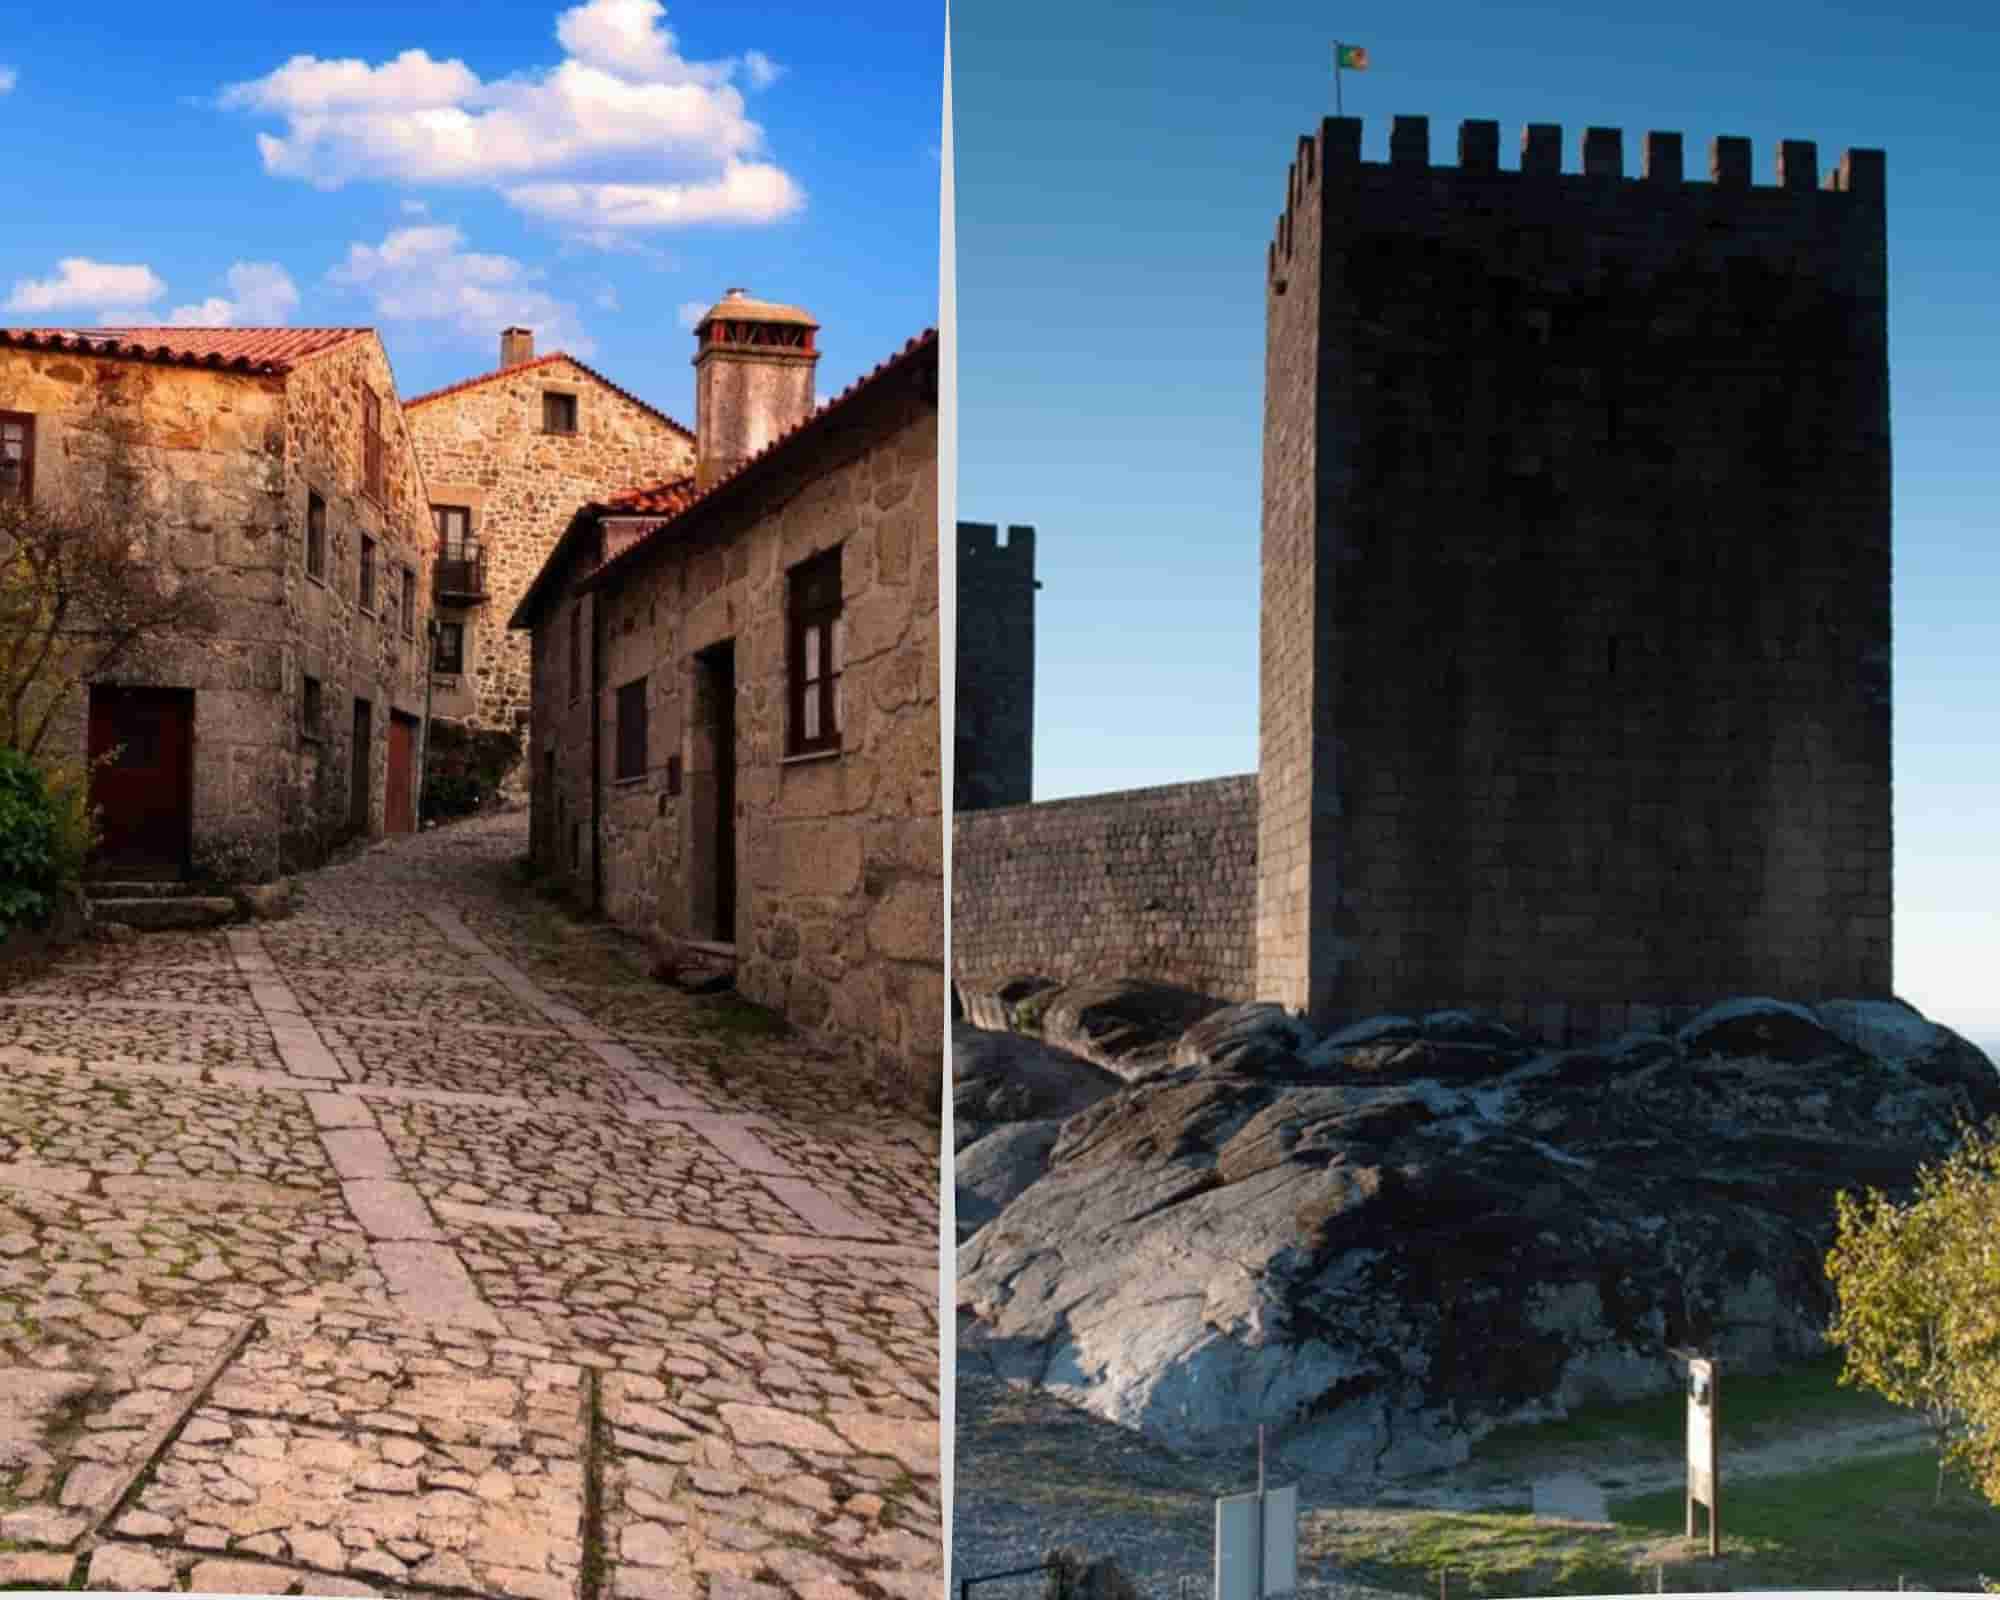 Linhares da beira - Aldeia e Castelo